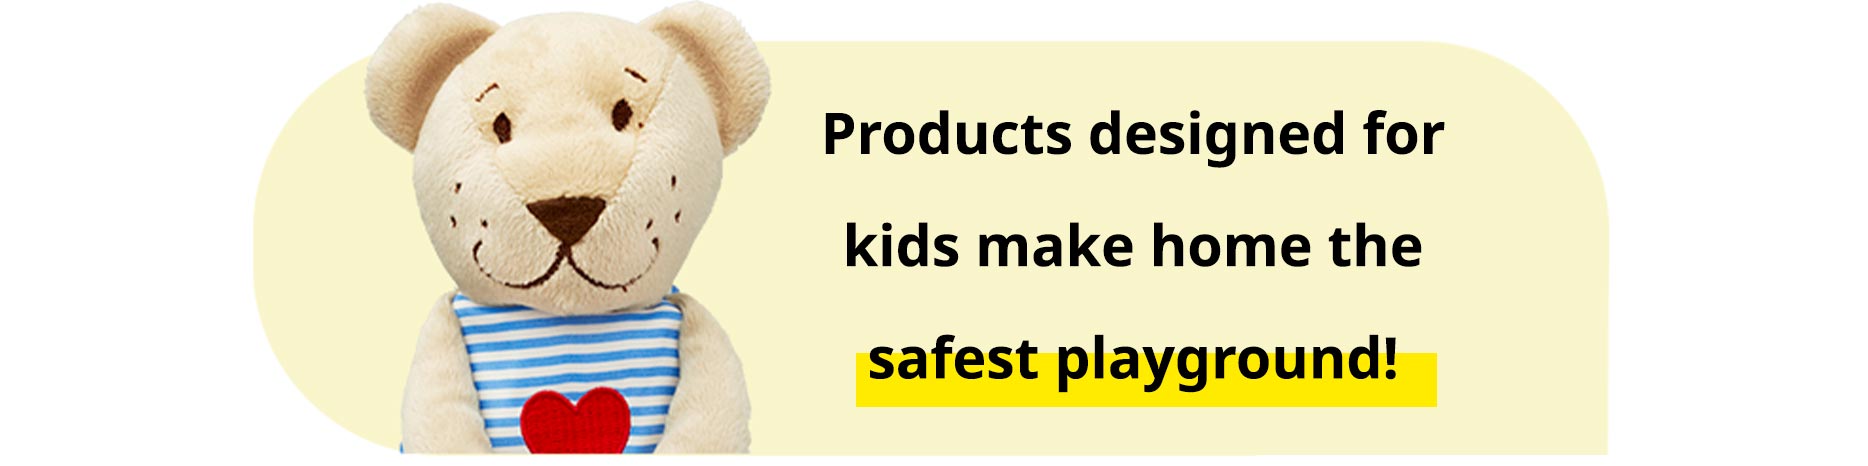 IKEA Çocuk Ürün Kalitesi ve Güvenlik